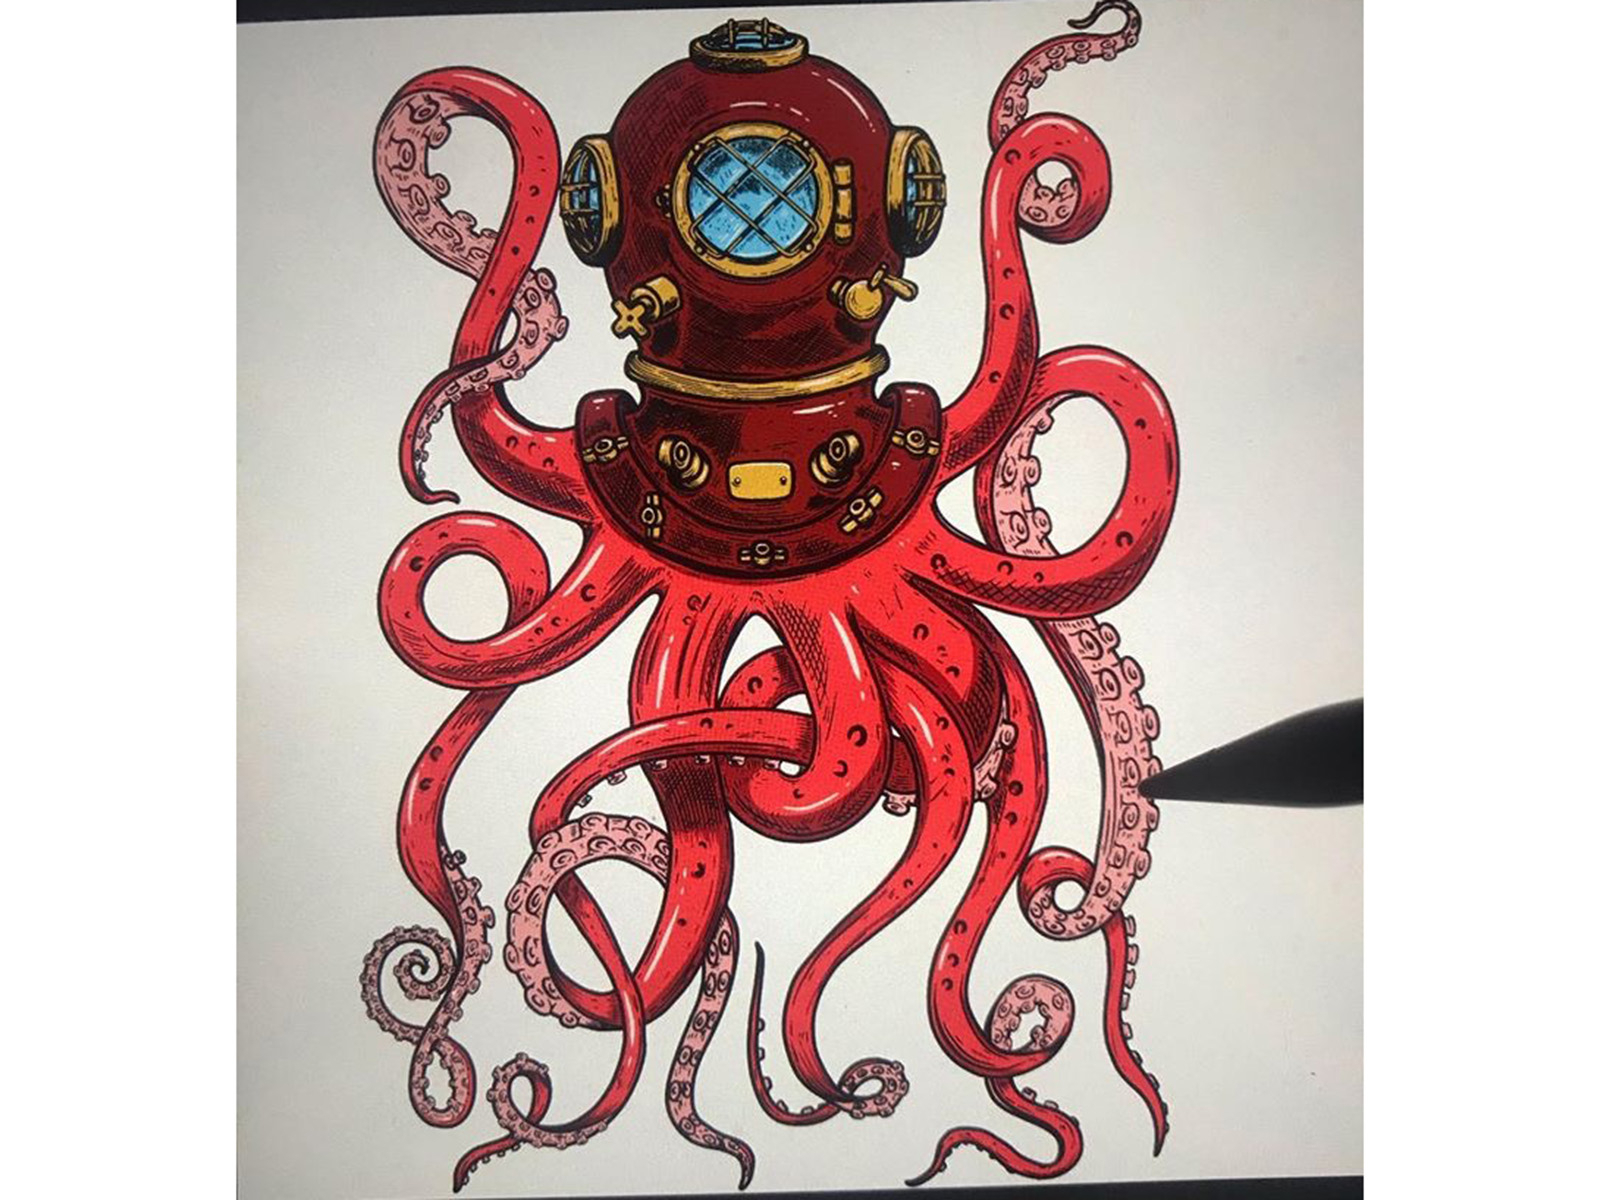 Diver helmet with octopus tentacles by Kotliar Ivan on Dribbble